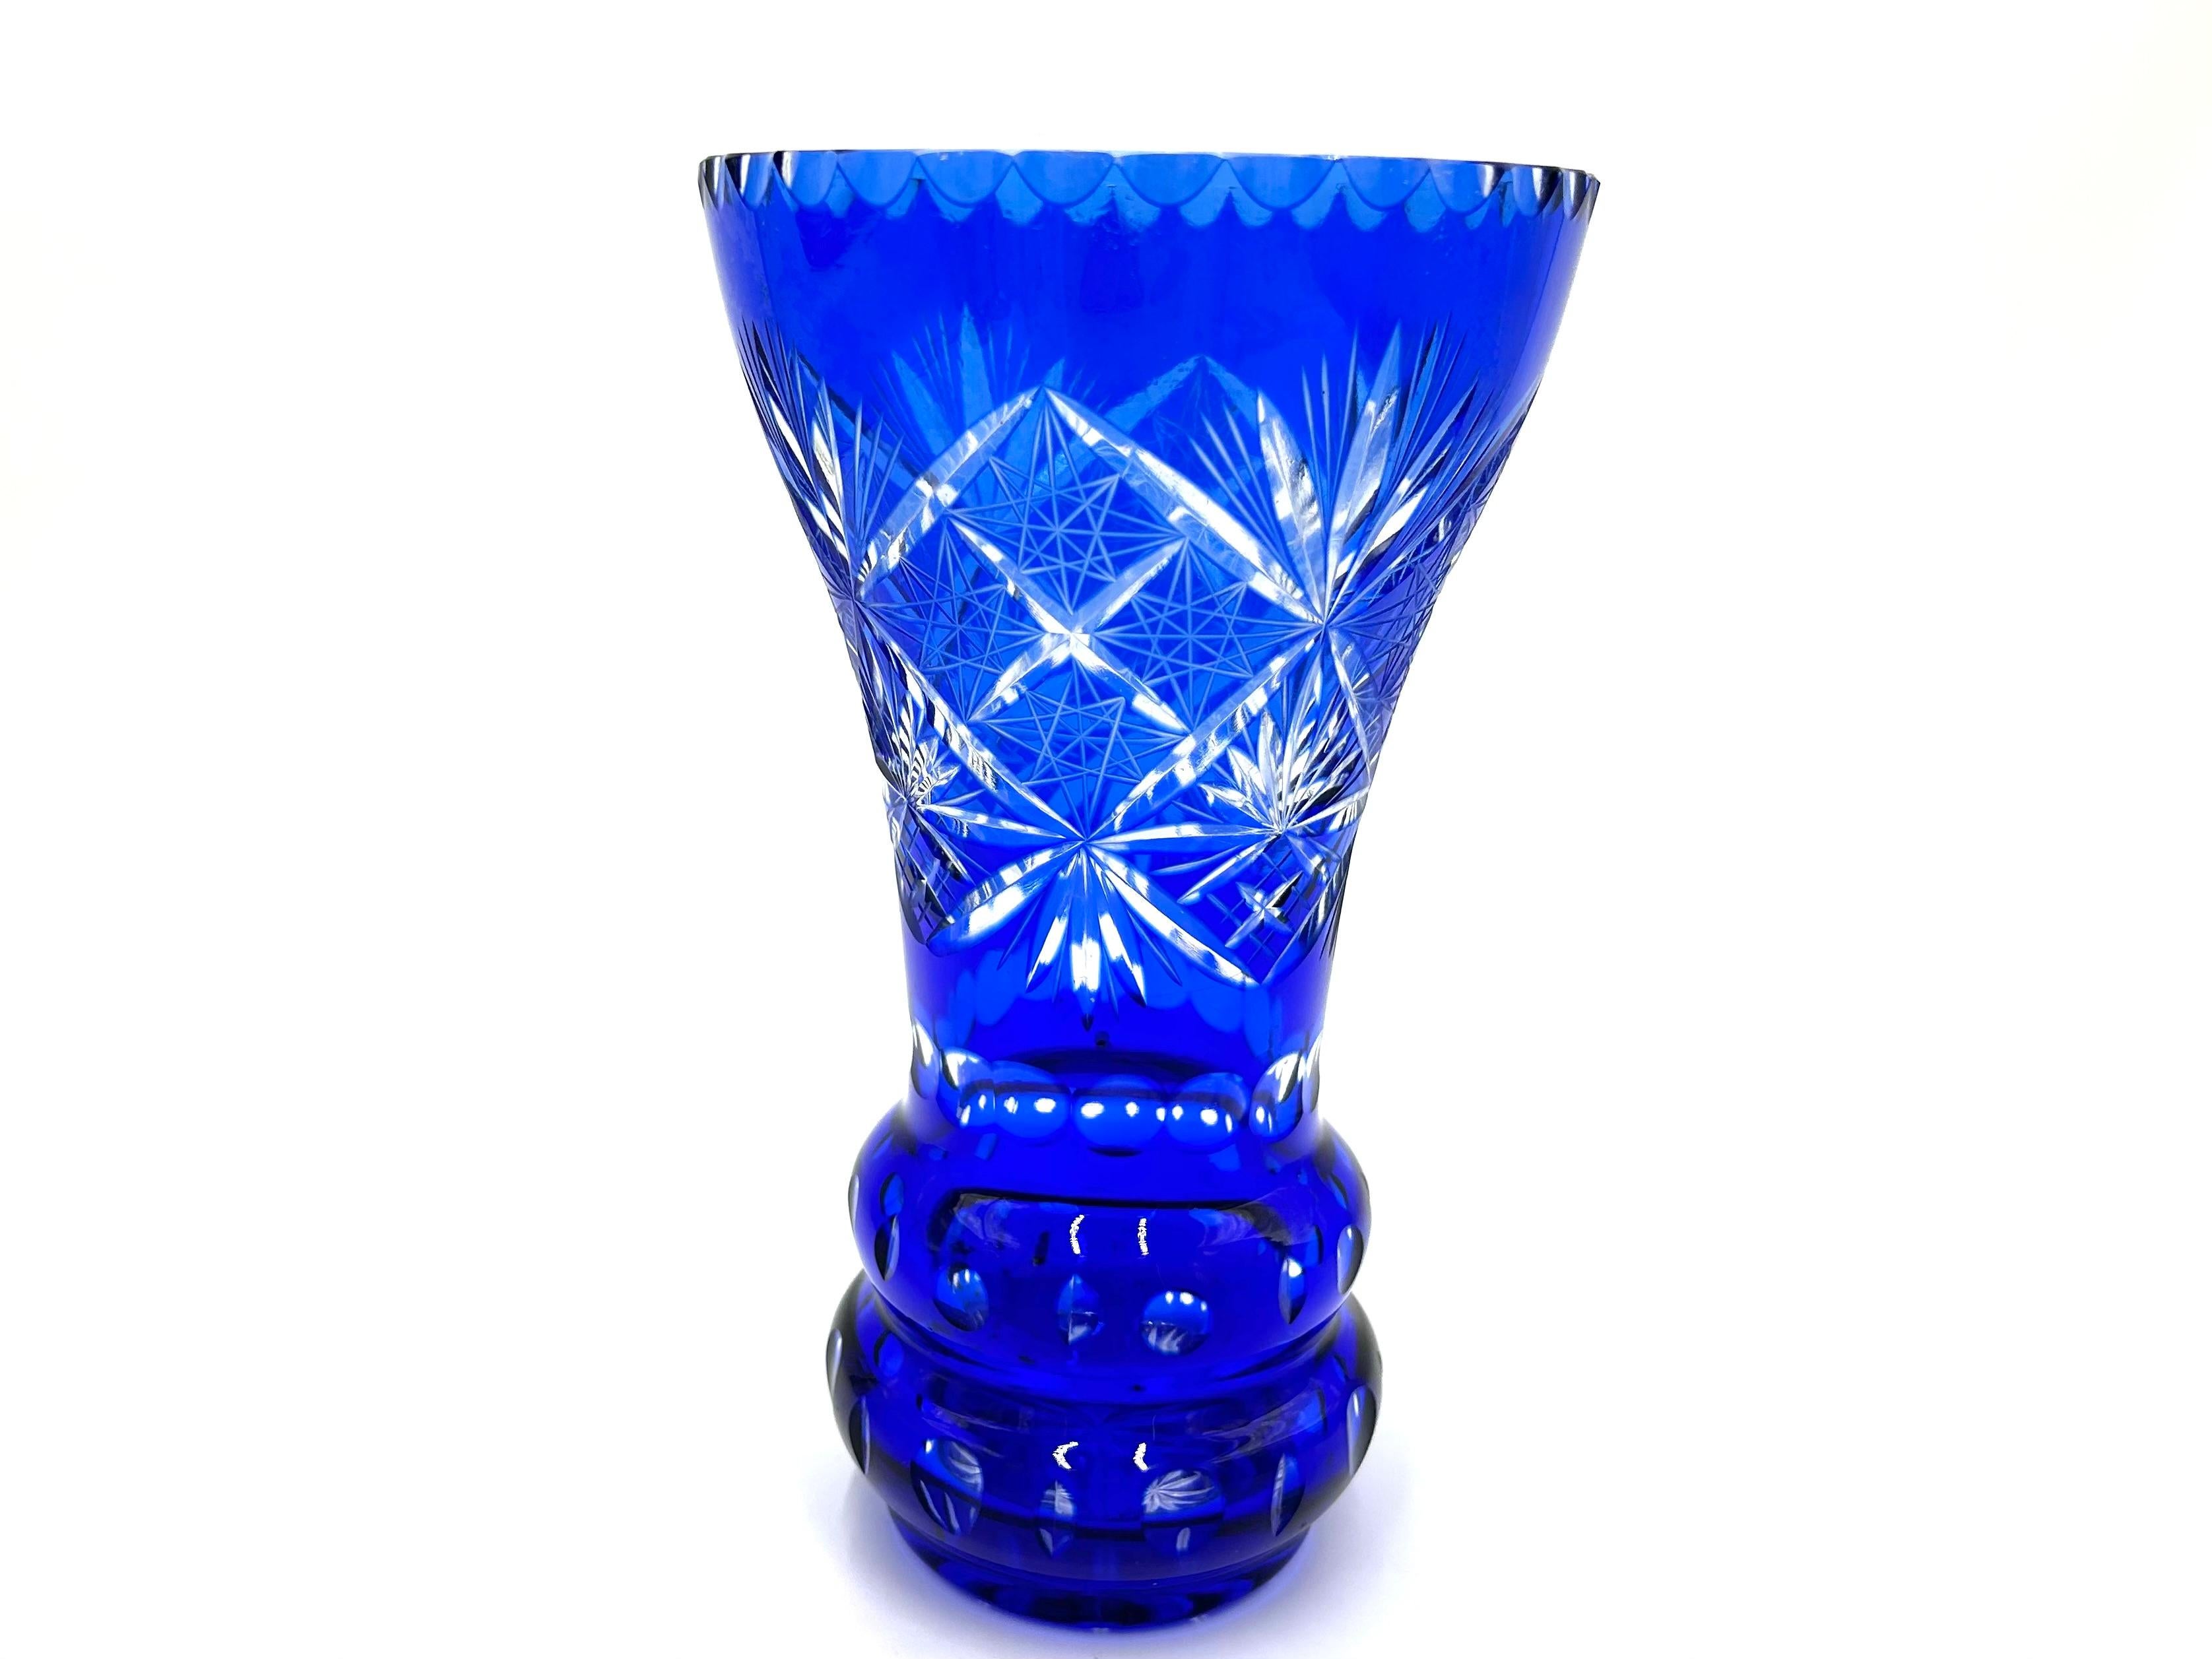 Vase aus kobaltblauem Kristall, verziert mit schönen geometrischen Schliffen.

Hergestellt in Polen in den 1960er Jahren.

Sehr guter Zustand, keine Schäden.

Höhe 25 cm, Durchmesser 15 cm